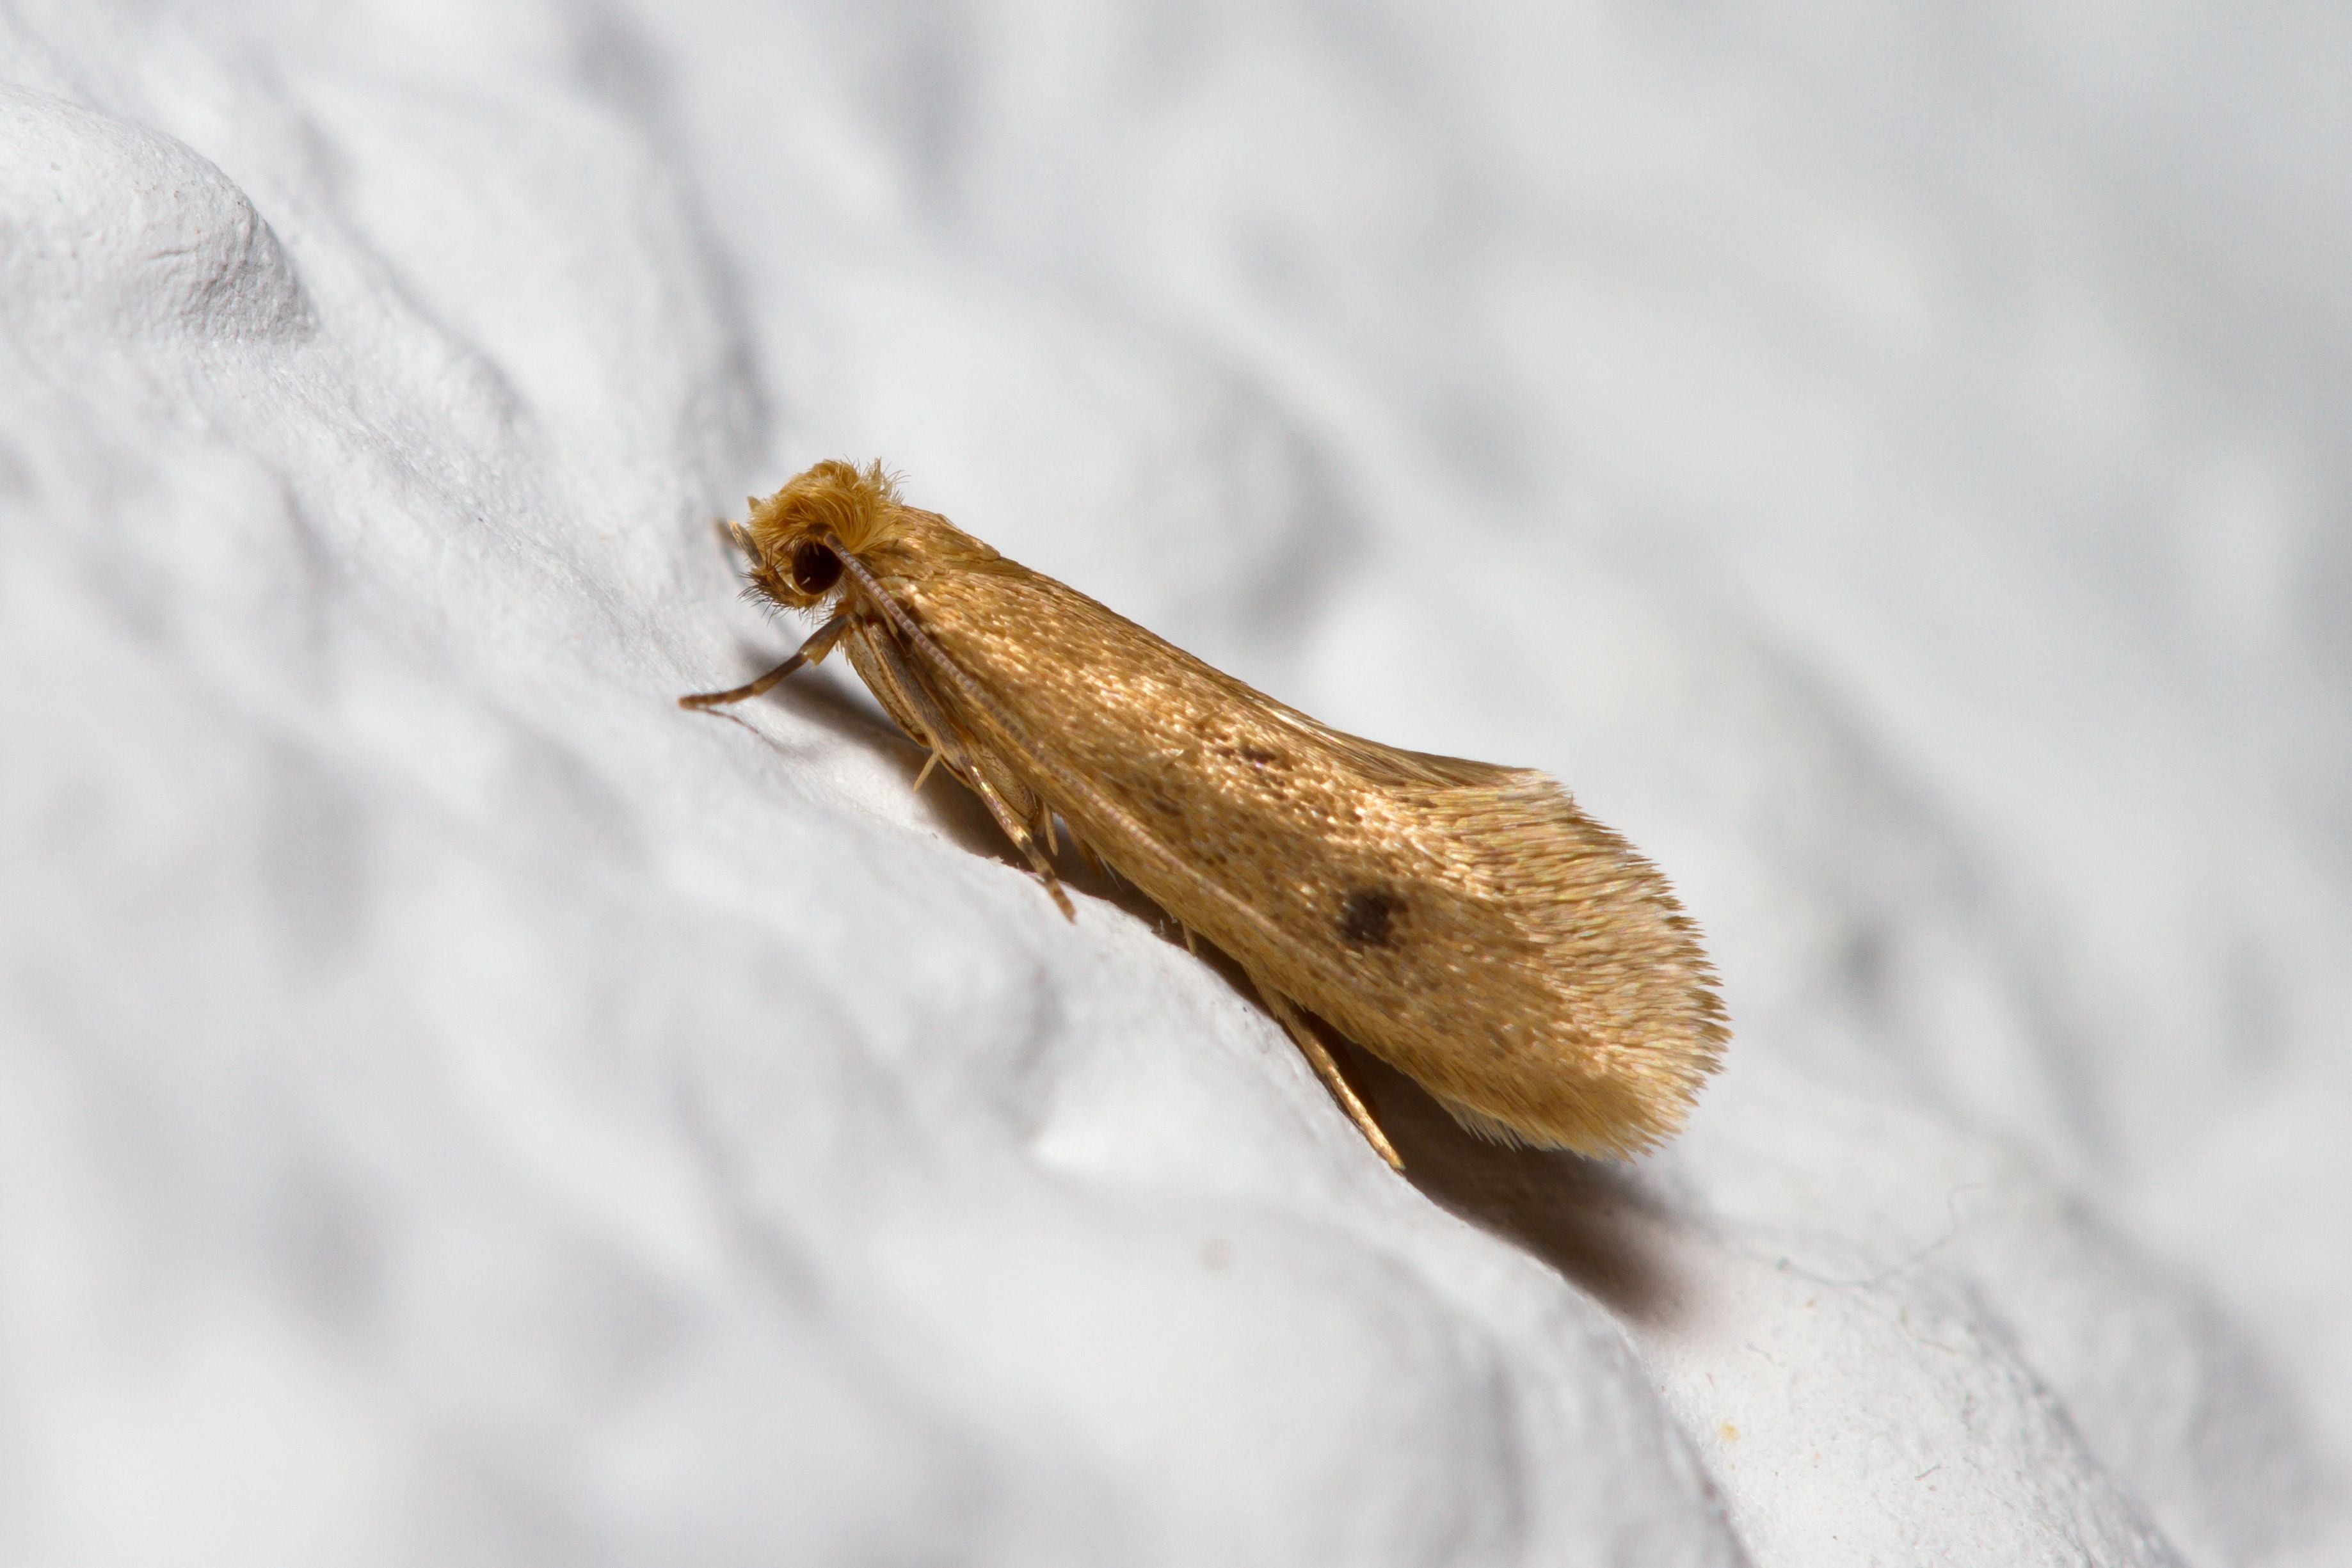 Pantry Moth Killer Kit - Kill Pantry Moths, Larvae and Eggs